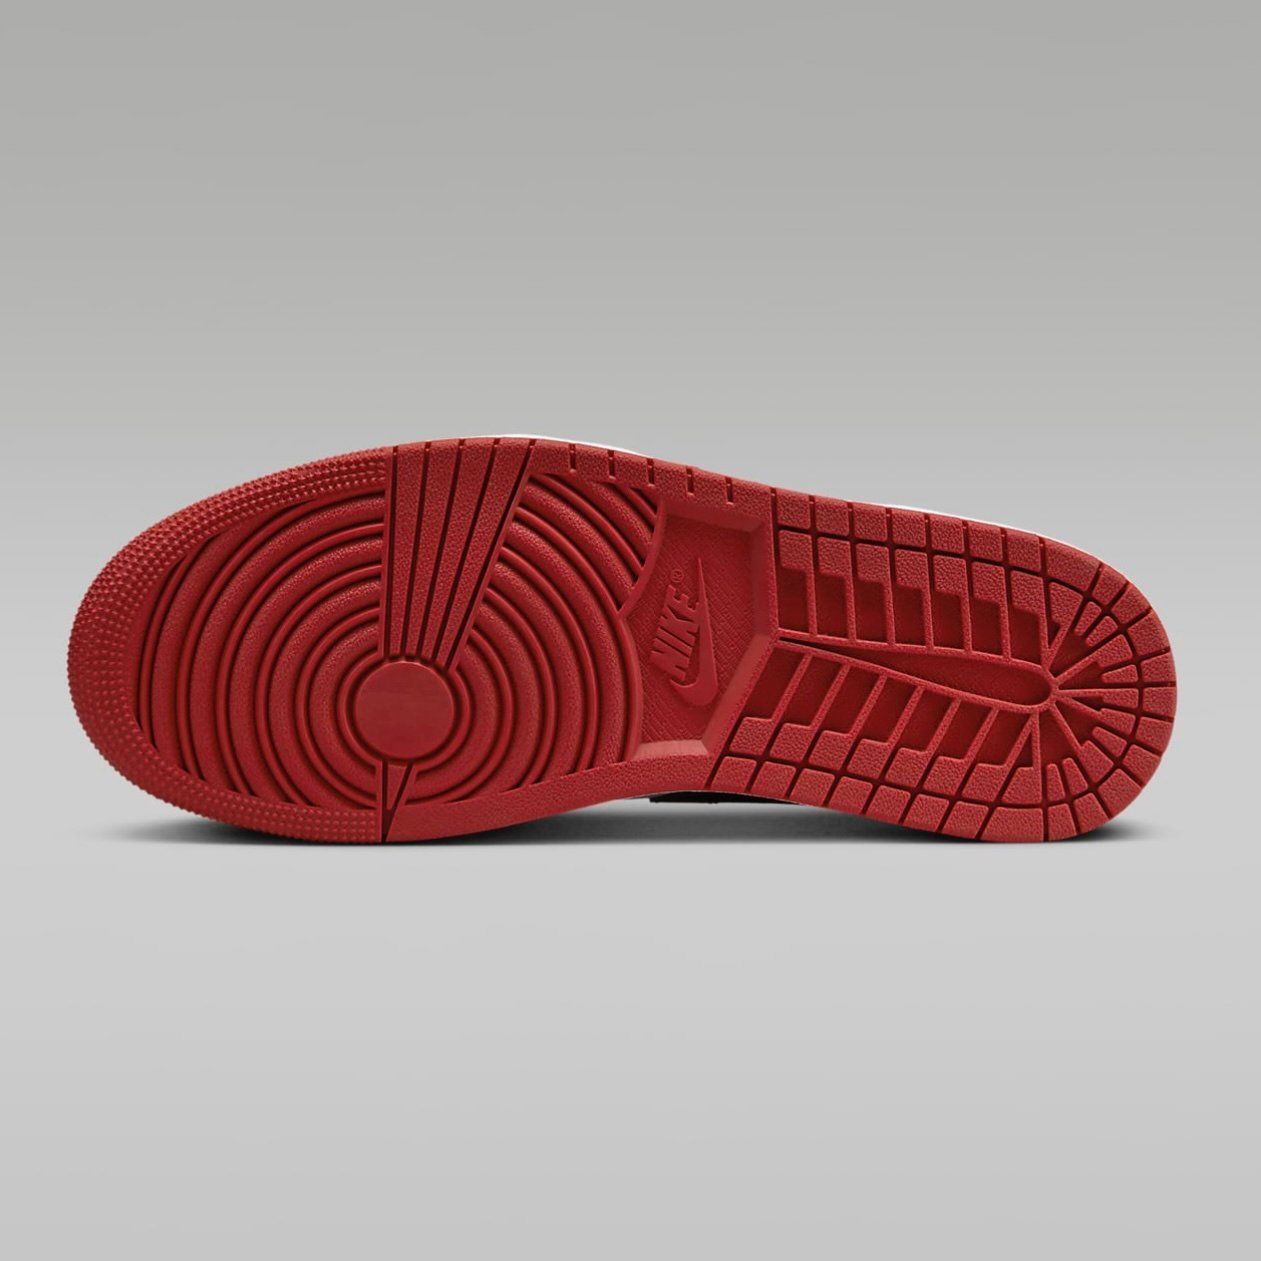  Nike Air Jordan 1 Low Bred Toe 553558 - 161 